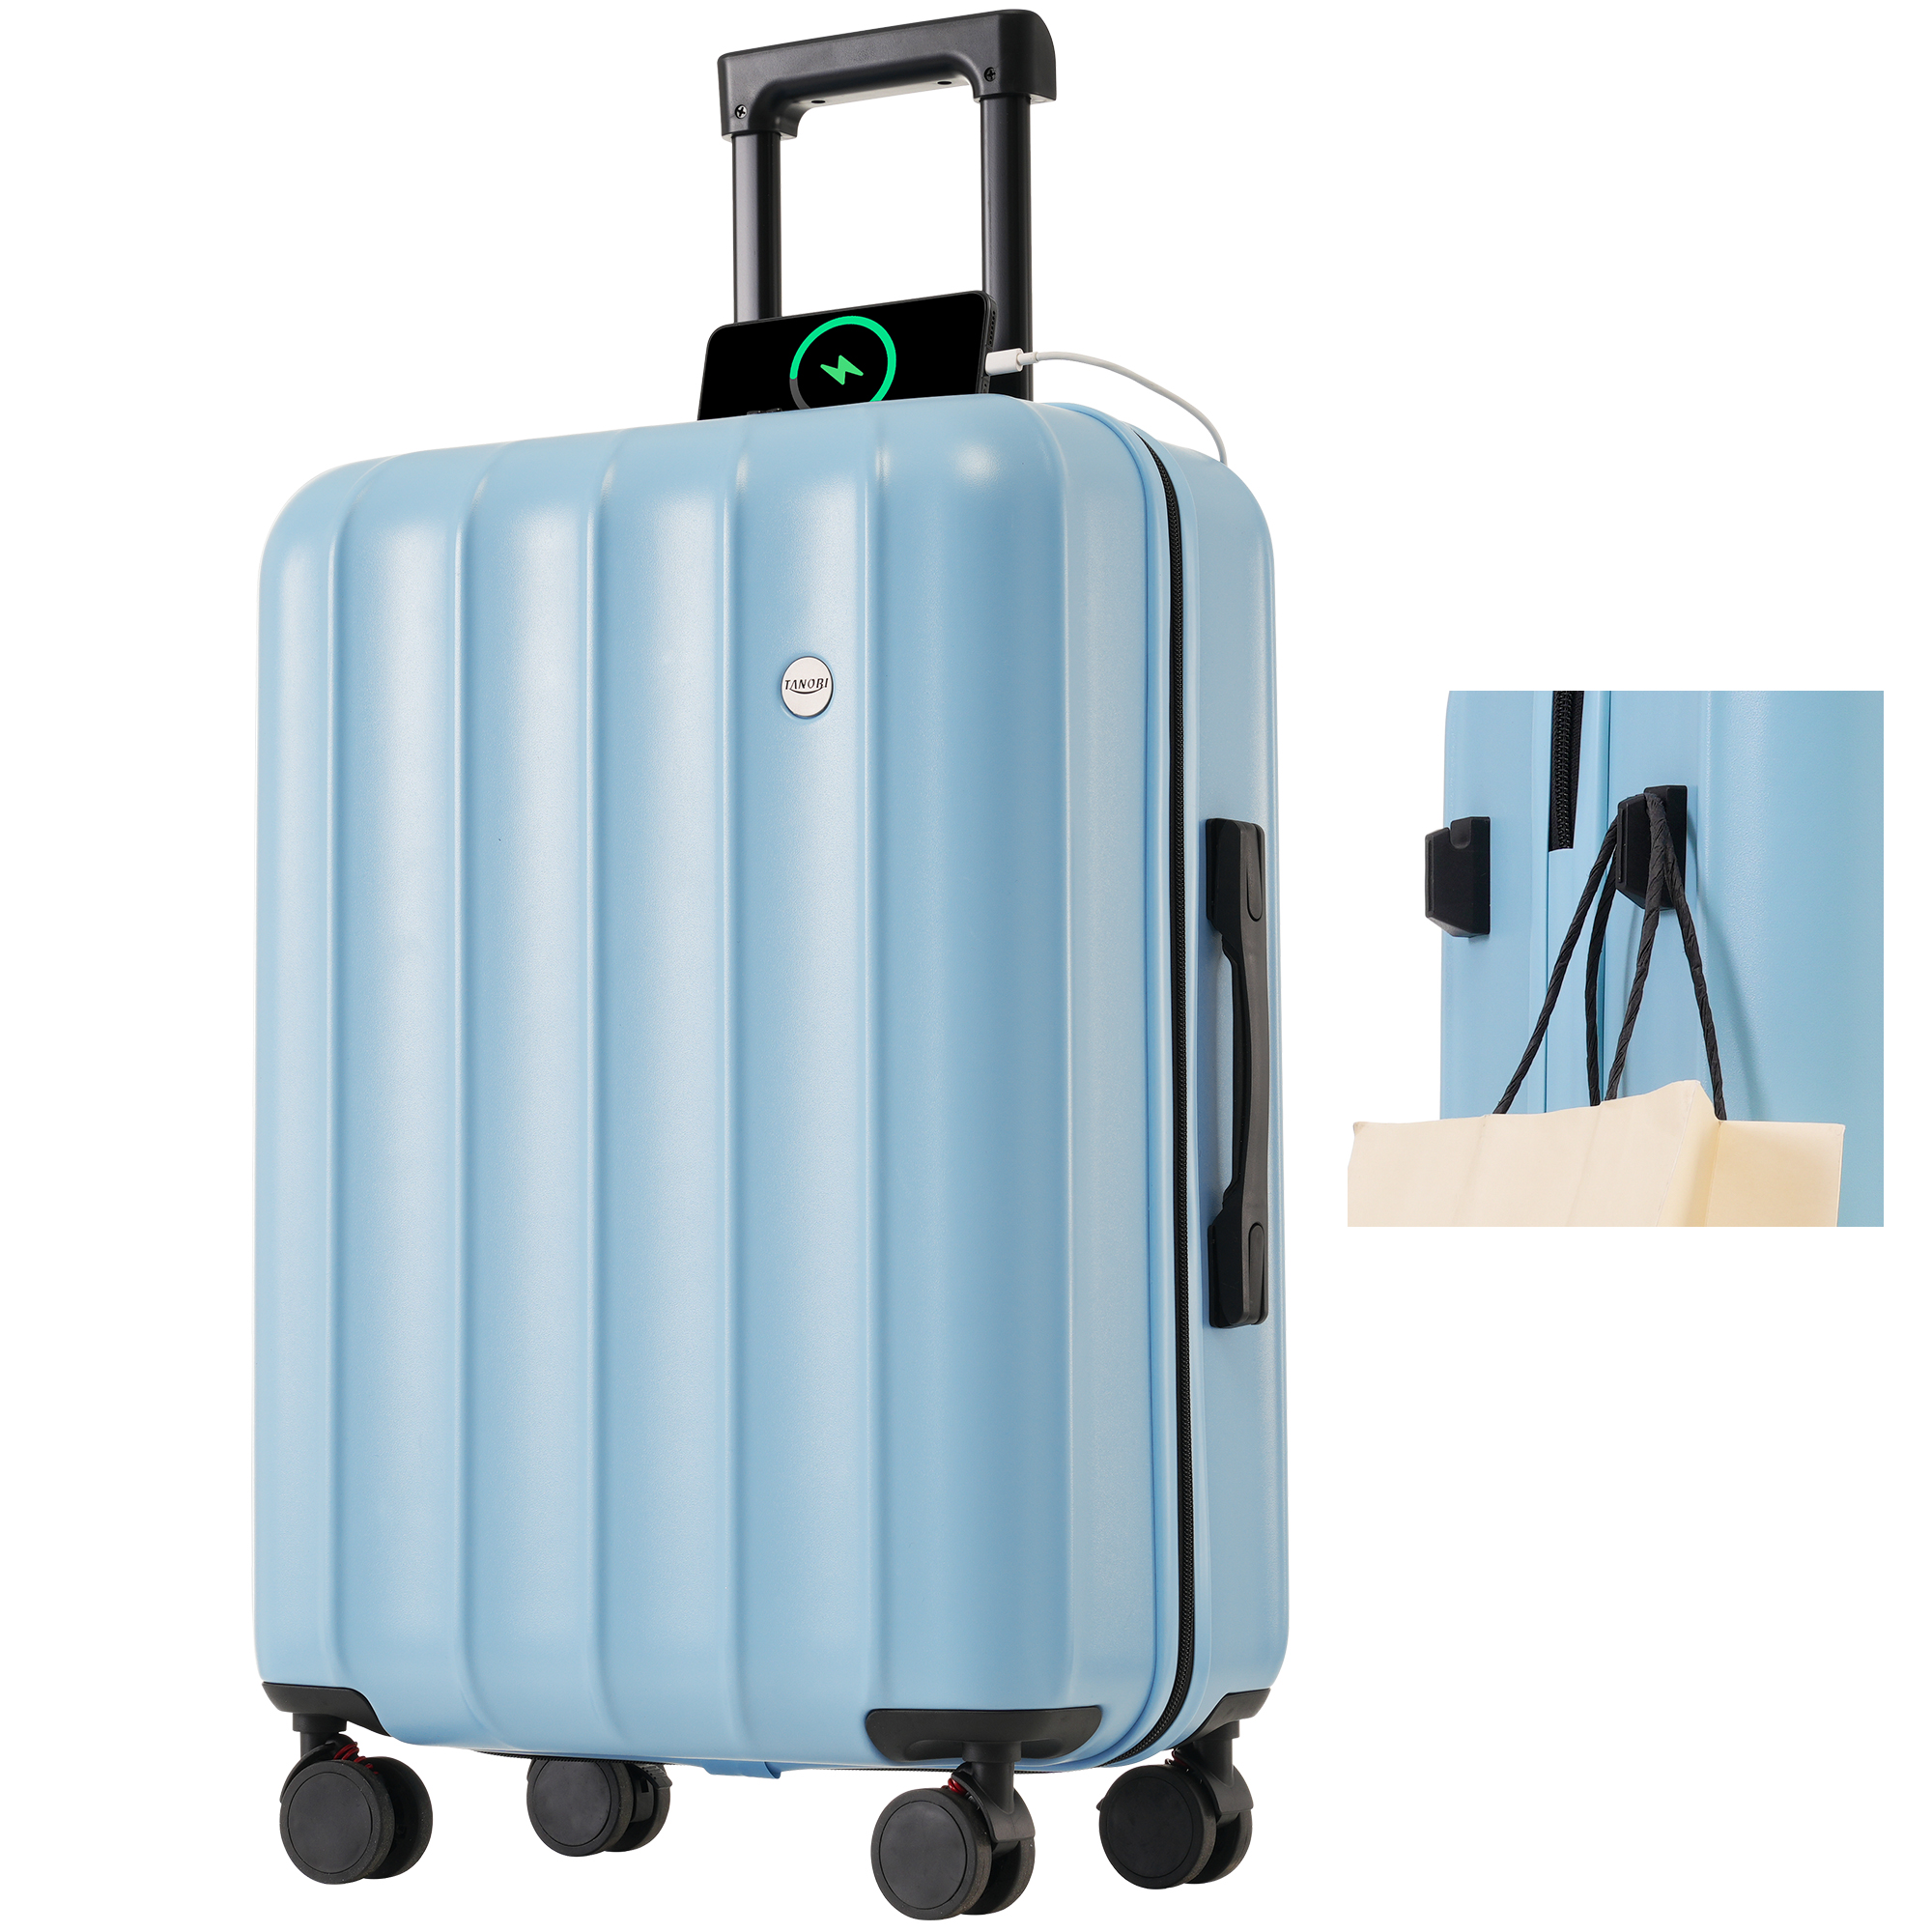 スーツケース Lサイズ キャリーケース 8-14日宿泊 キャリーバッグ USBポート フック付き 超軽量 ストッパー付き TSAローク搭載 旅行